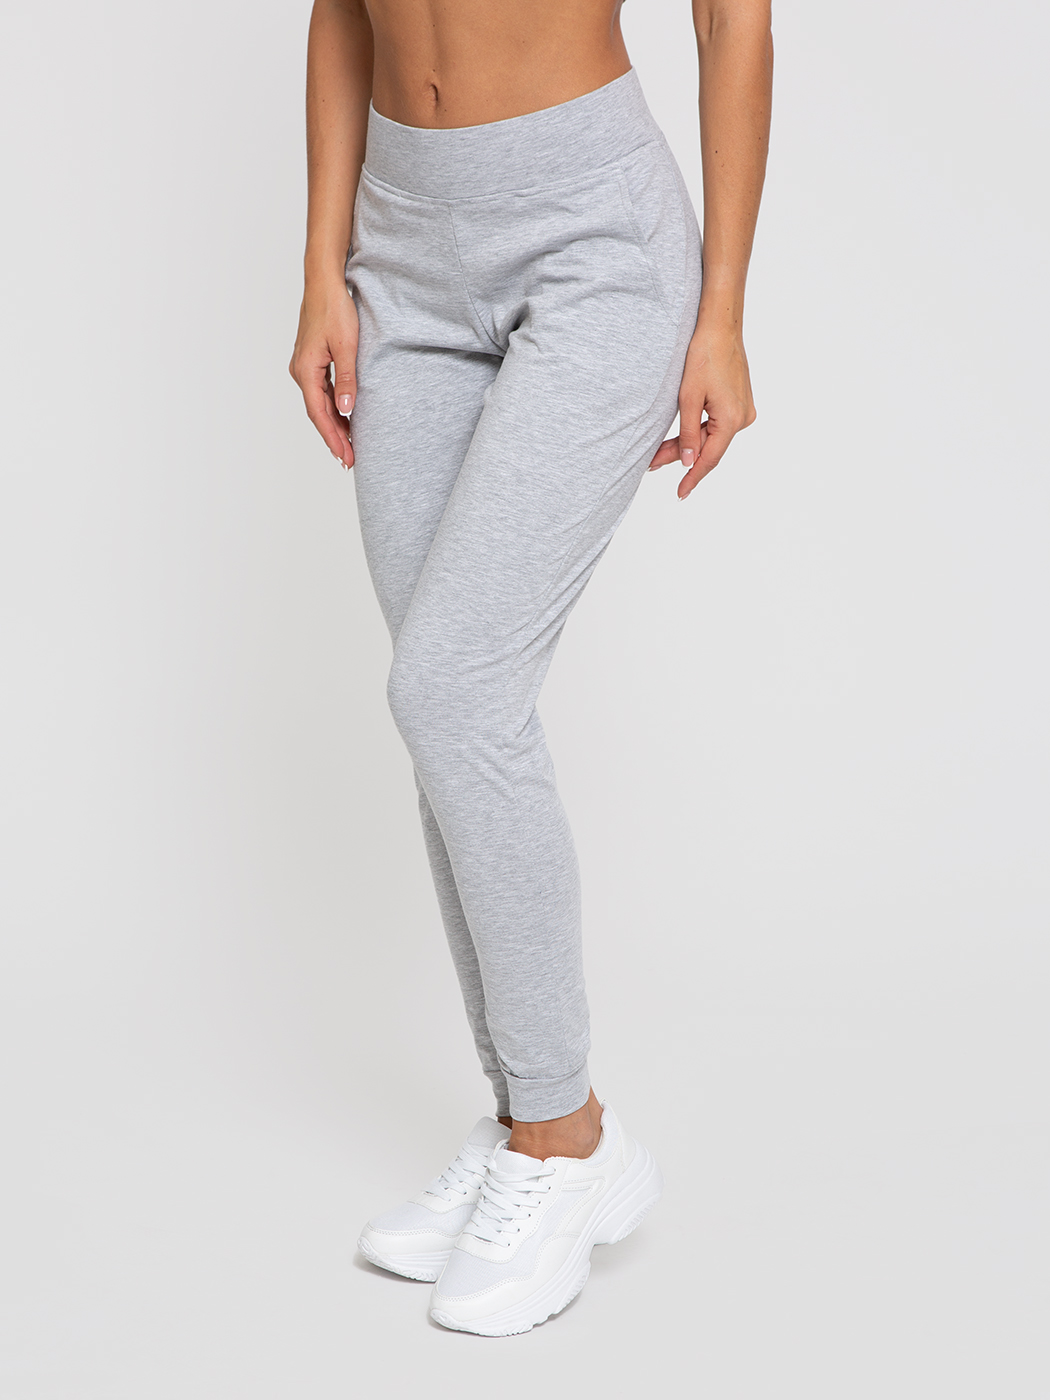 Спортивные брюки женские Lunarable kpan002_ серые L